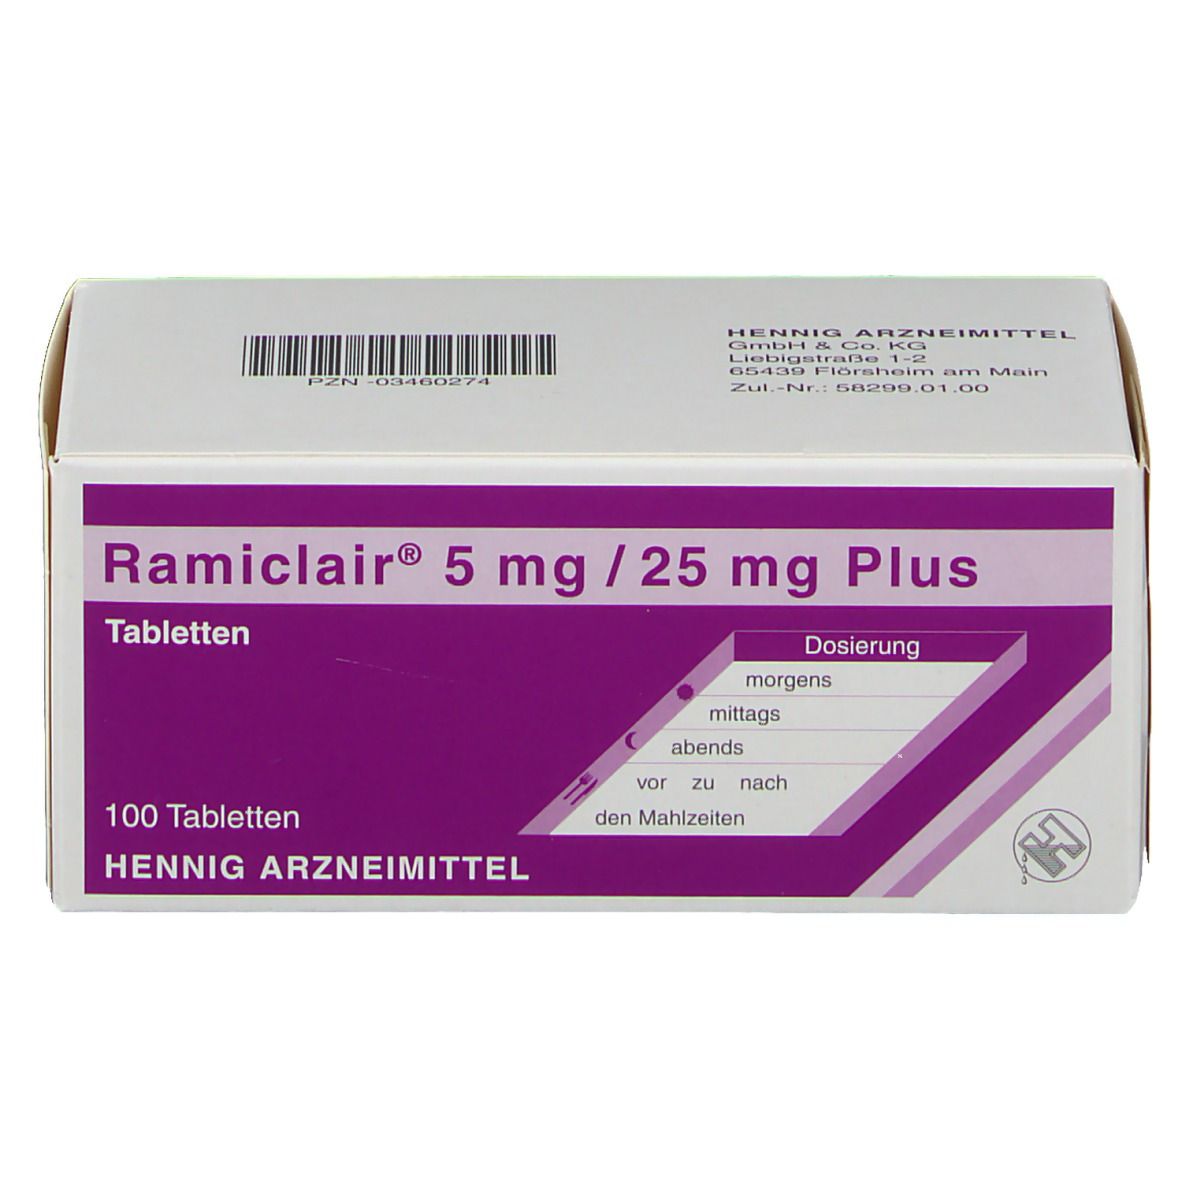 Ramiclair® 5 mg/25 mg Plus